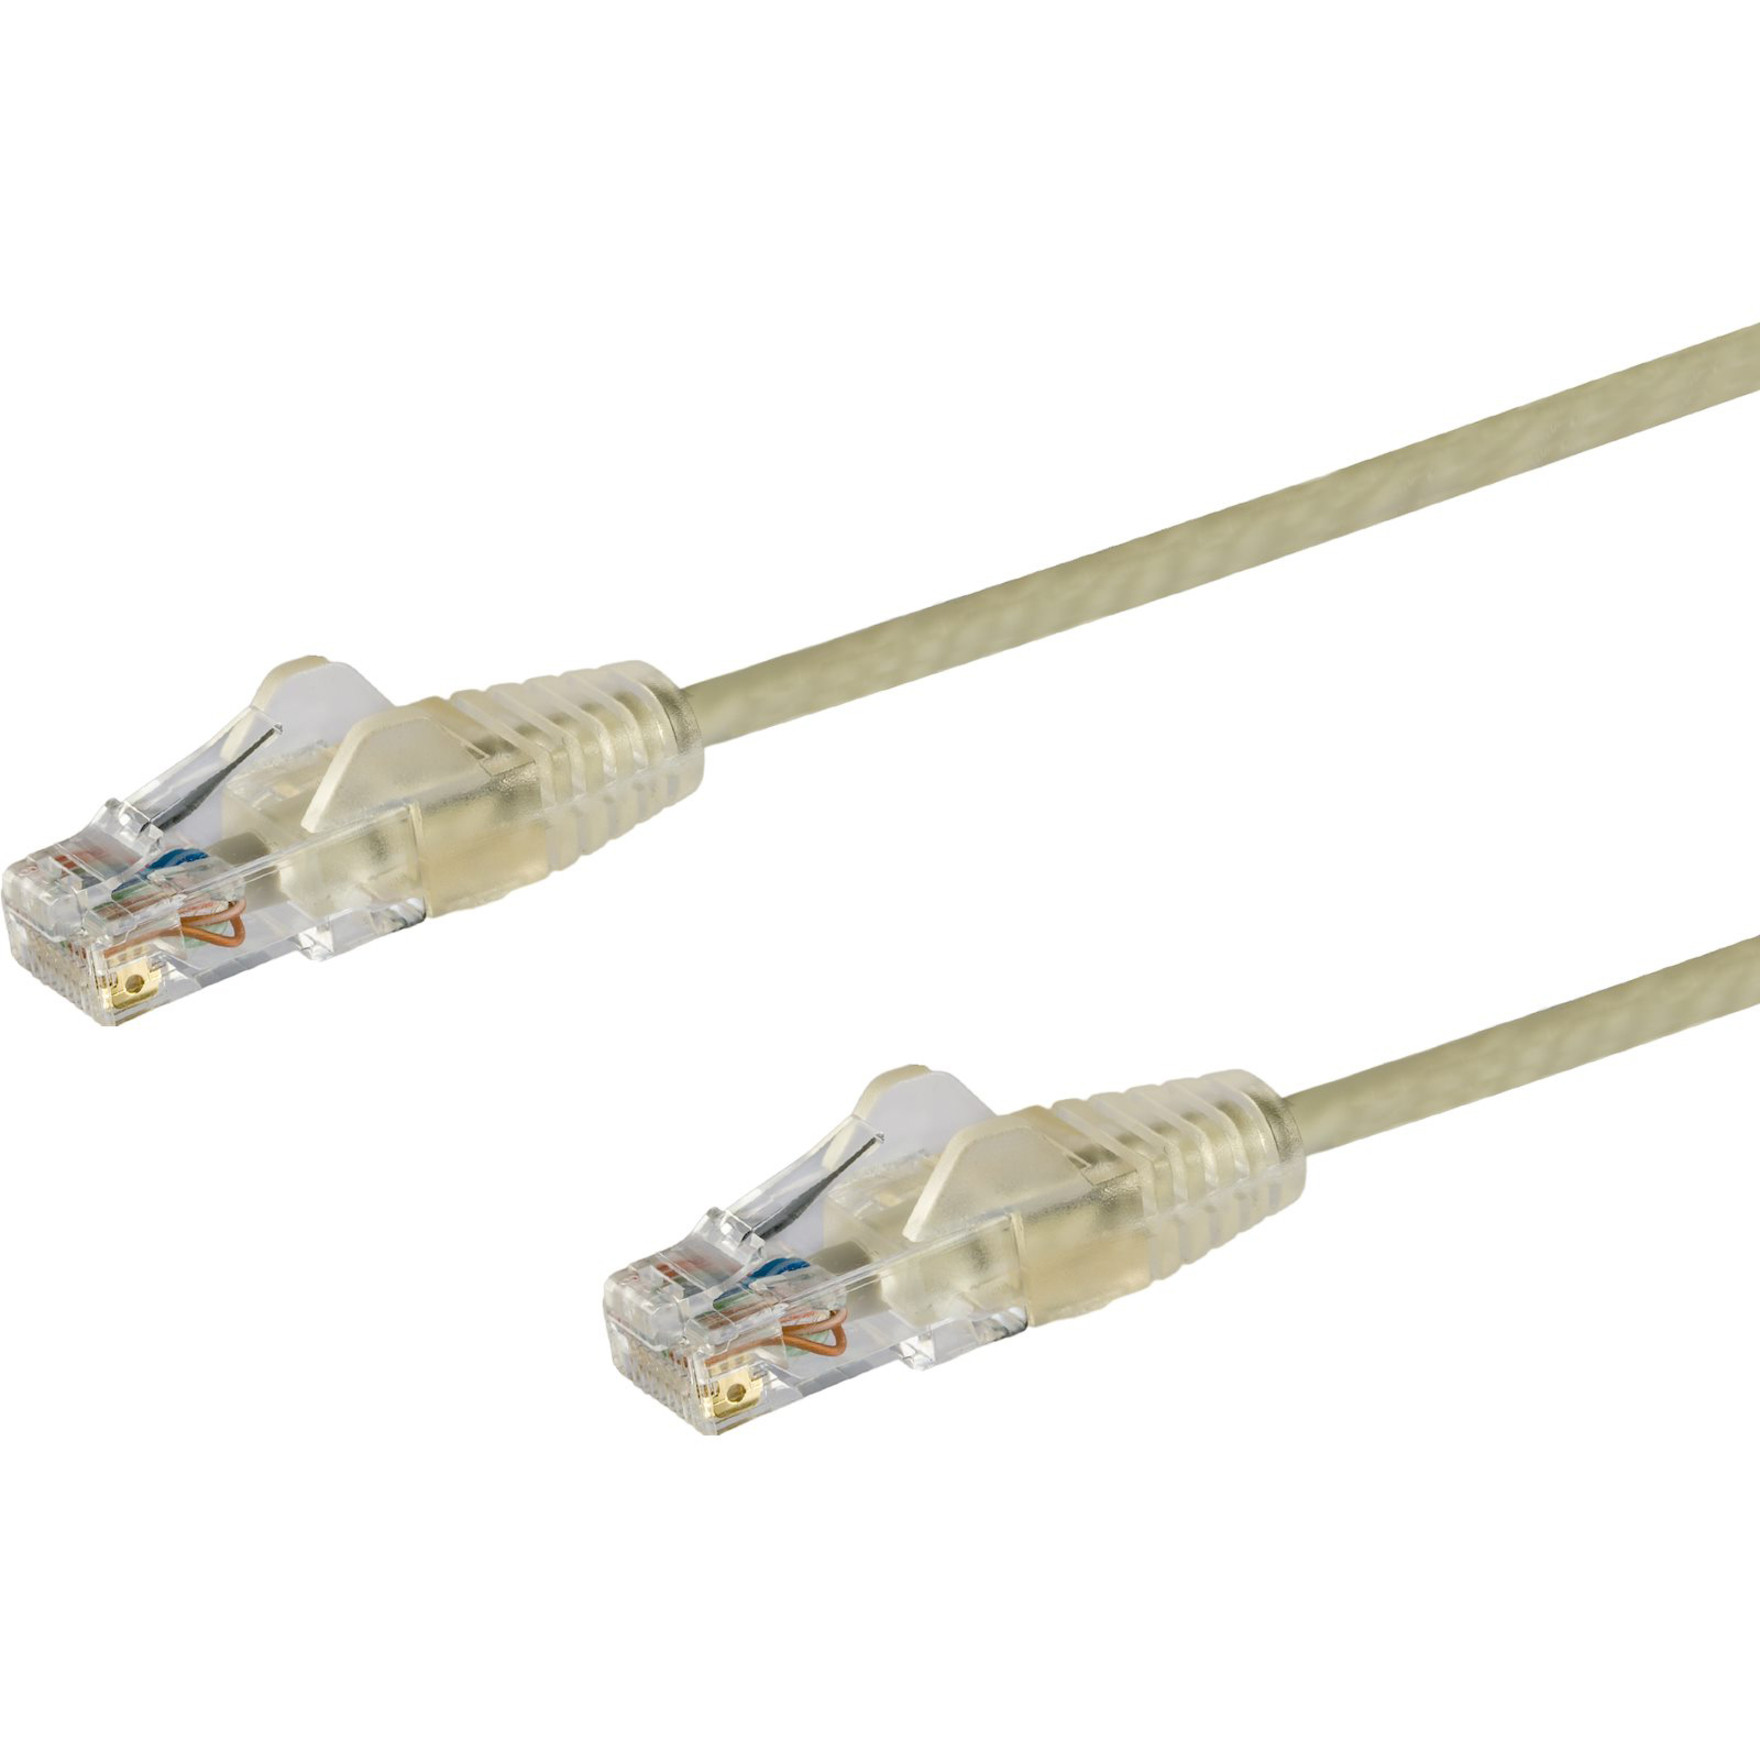 Startech .com 3 ft CAT6 CableSlim CAT6 Patch CordGraySnagless RJ45 ConnectorsGigabit Ethernet Cable28 AWGLSZH (N6PAT3GRS)S… N6PAT3GRS